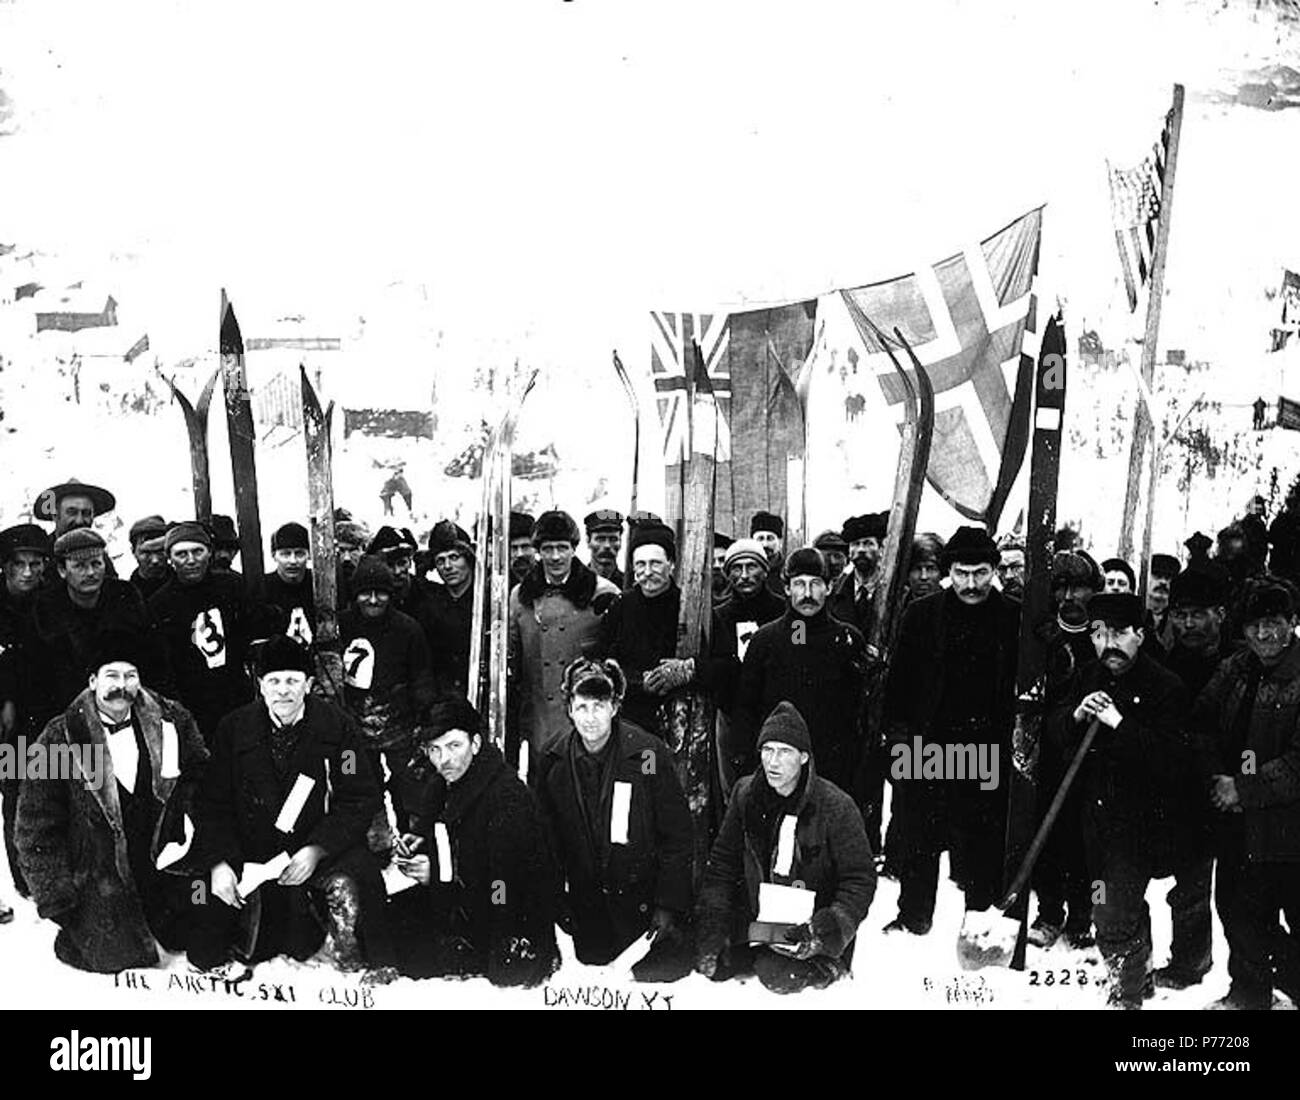 . Englisch: Arctic Ski Club, Dawson City, Yukon Territory, Ca. 1899. Englisch: Gruppe von Männern mit britischen, norwegischen und amerikanische Flaggen posierte für Gruppenbild mit ihren skiis. Bildunterschrift auf das Bild: "Themen der Arktis Ski Club DawsonY.T.' (LCTGM): Skifahrer - Yukon Themen (LCSH): Arktis Ski Club (Yukon); Portraits, Group ----- Yukon Dawson. ca. 1899 1 Arktis Ski Club, Dawson City, Yukon Territory, ca 1899 (HEGG 349) Stockfoto